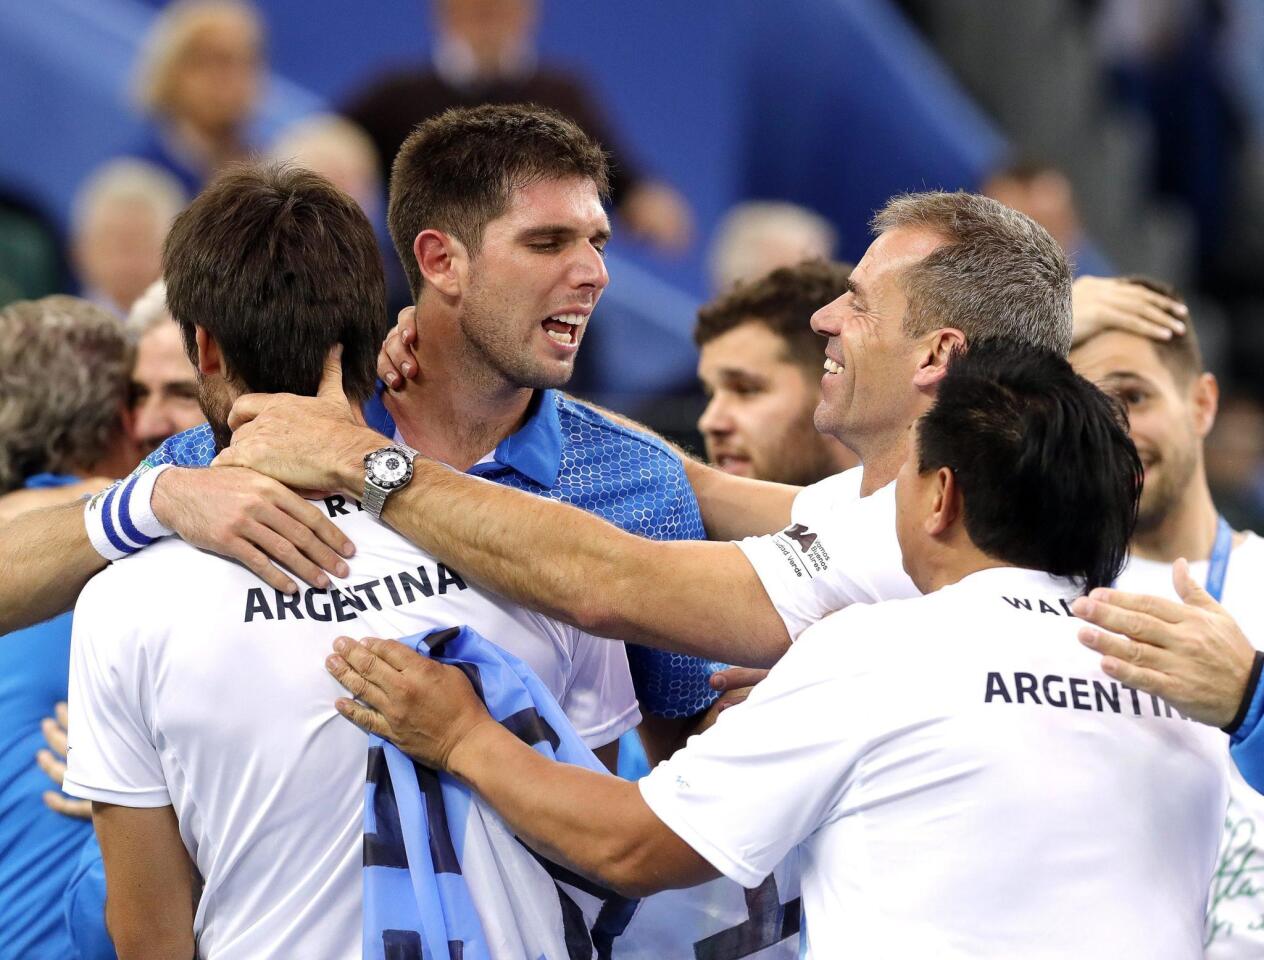 Davis Cup final - Croatia vs Argentina